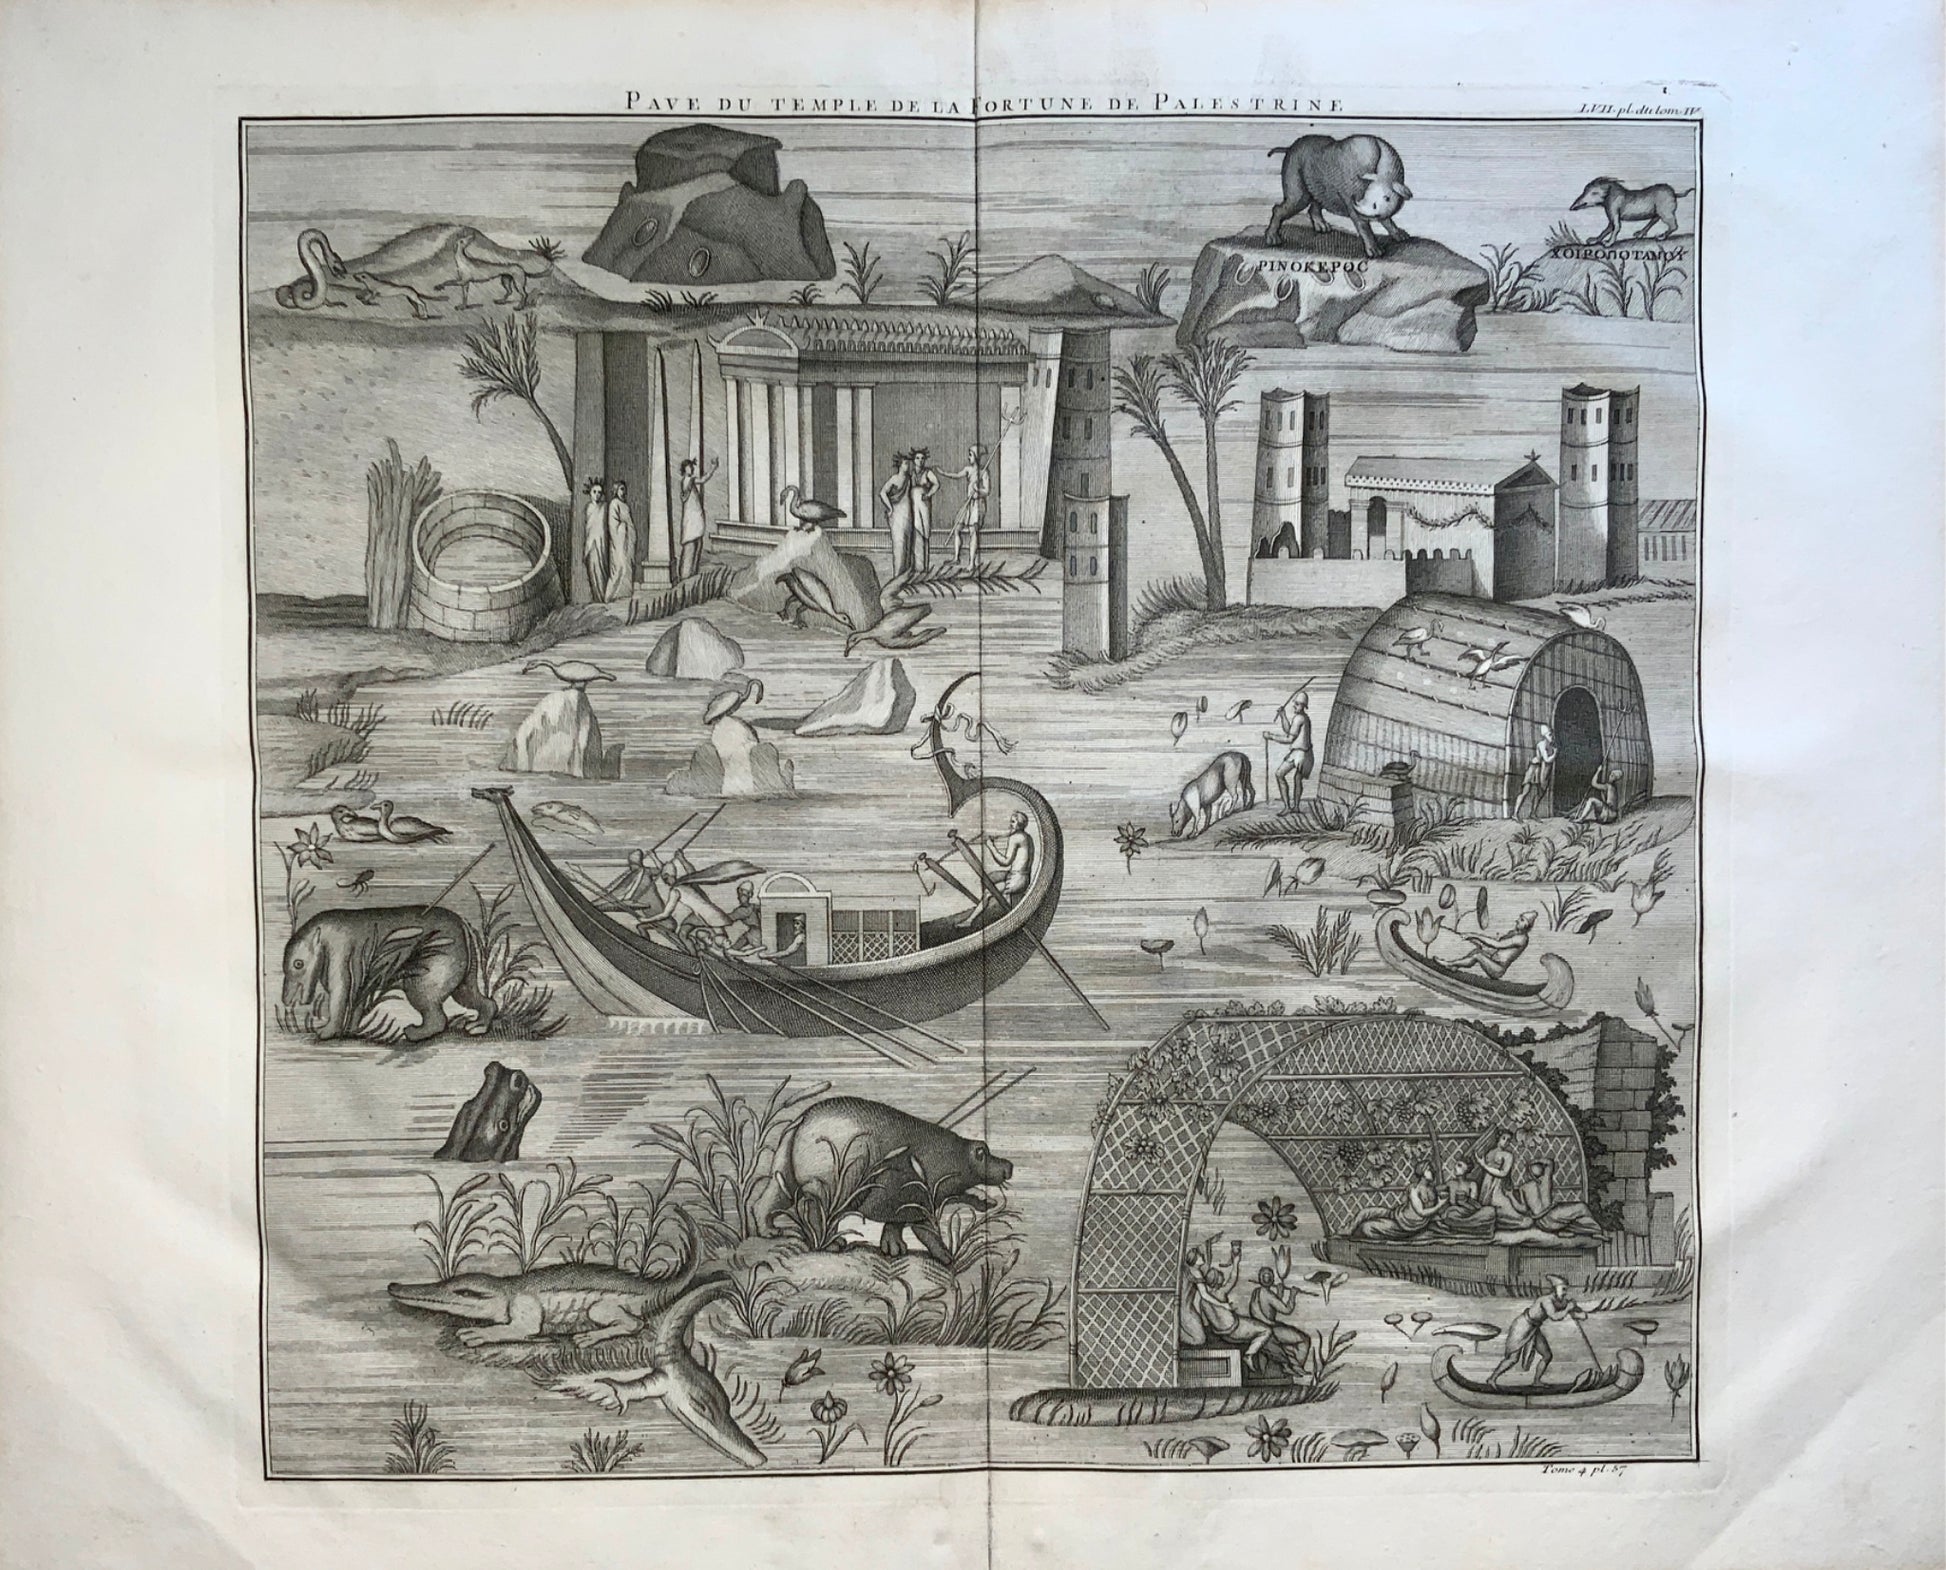 1719 de Montfaucon; MOSAIC Temple of Fortune Palestrine - Large engraving (65cm) - Classical Art